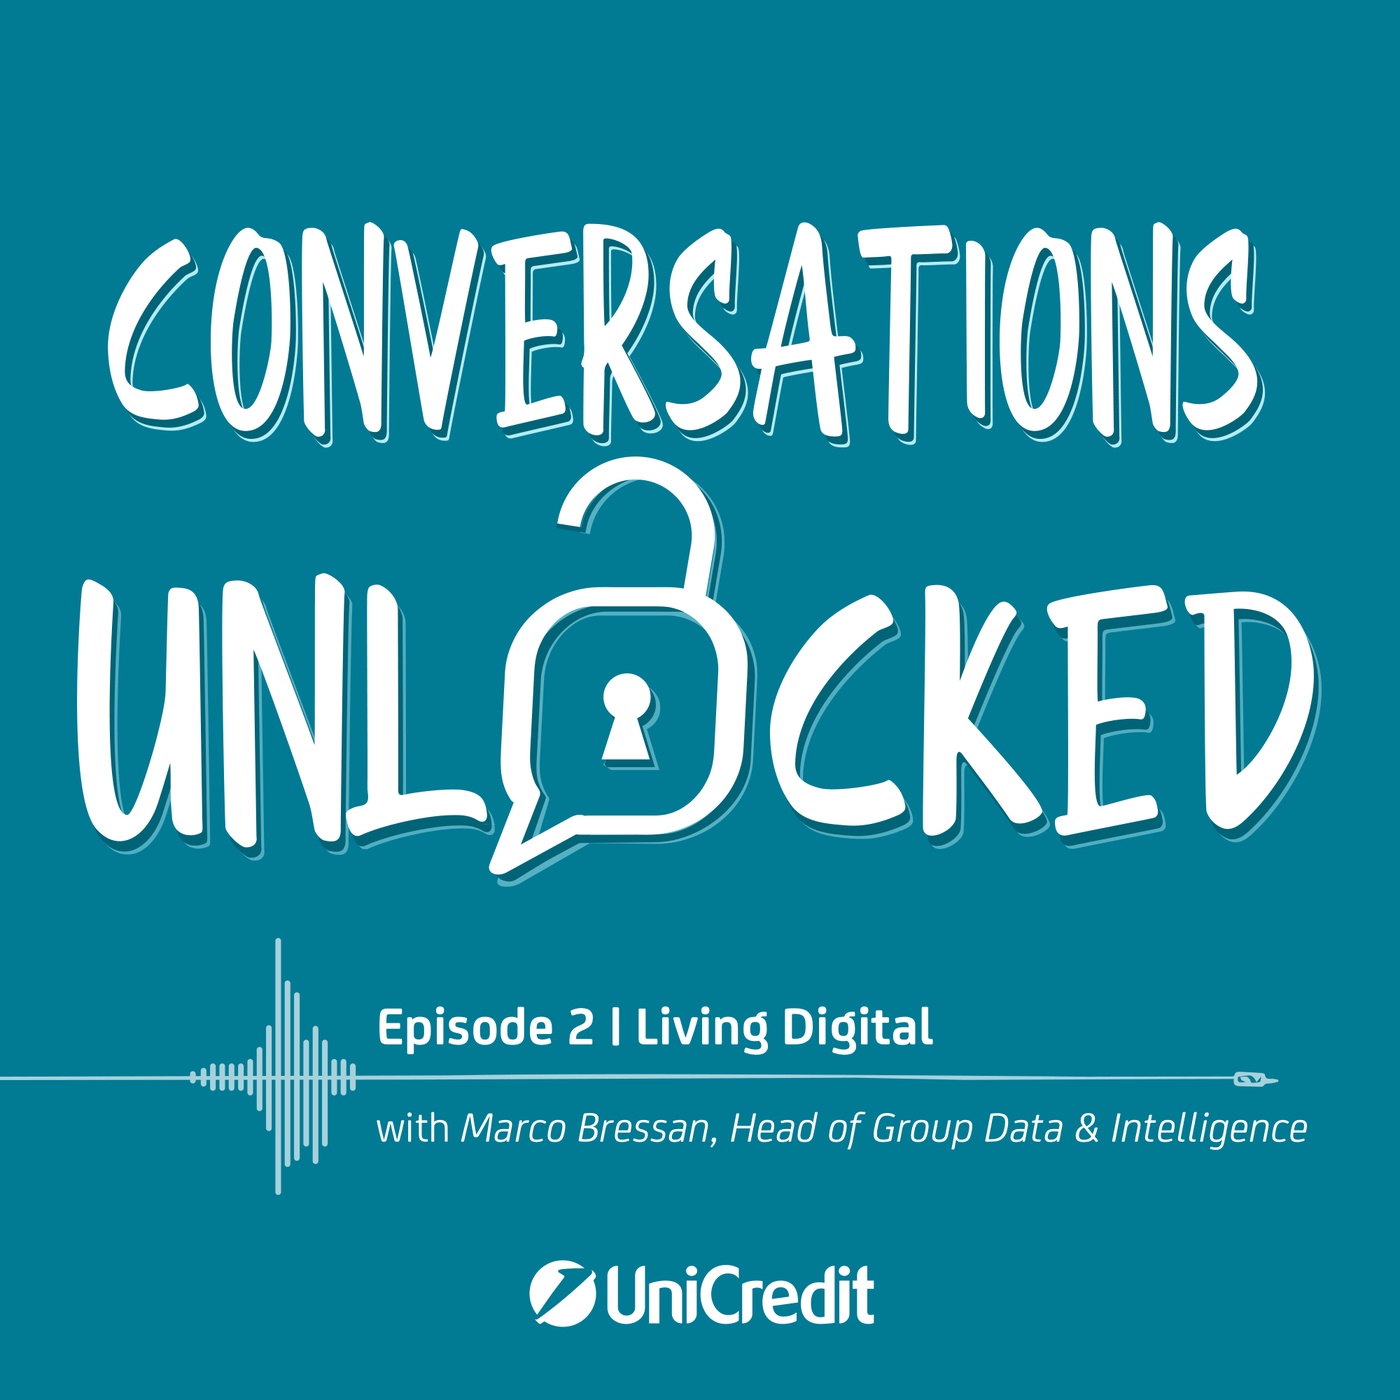 Episode 2 | Living Digital